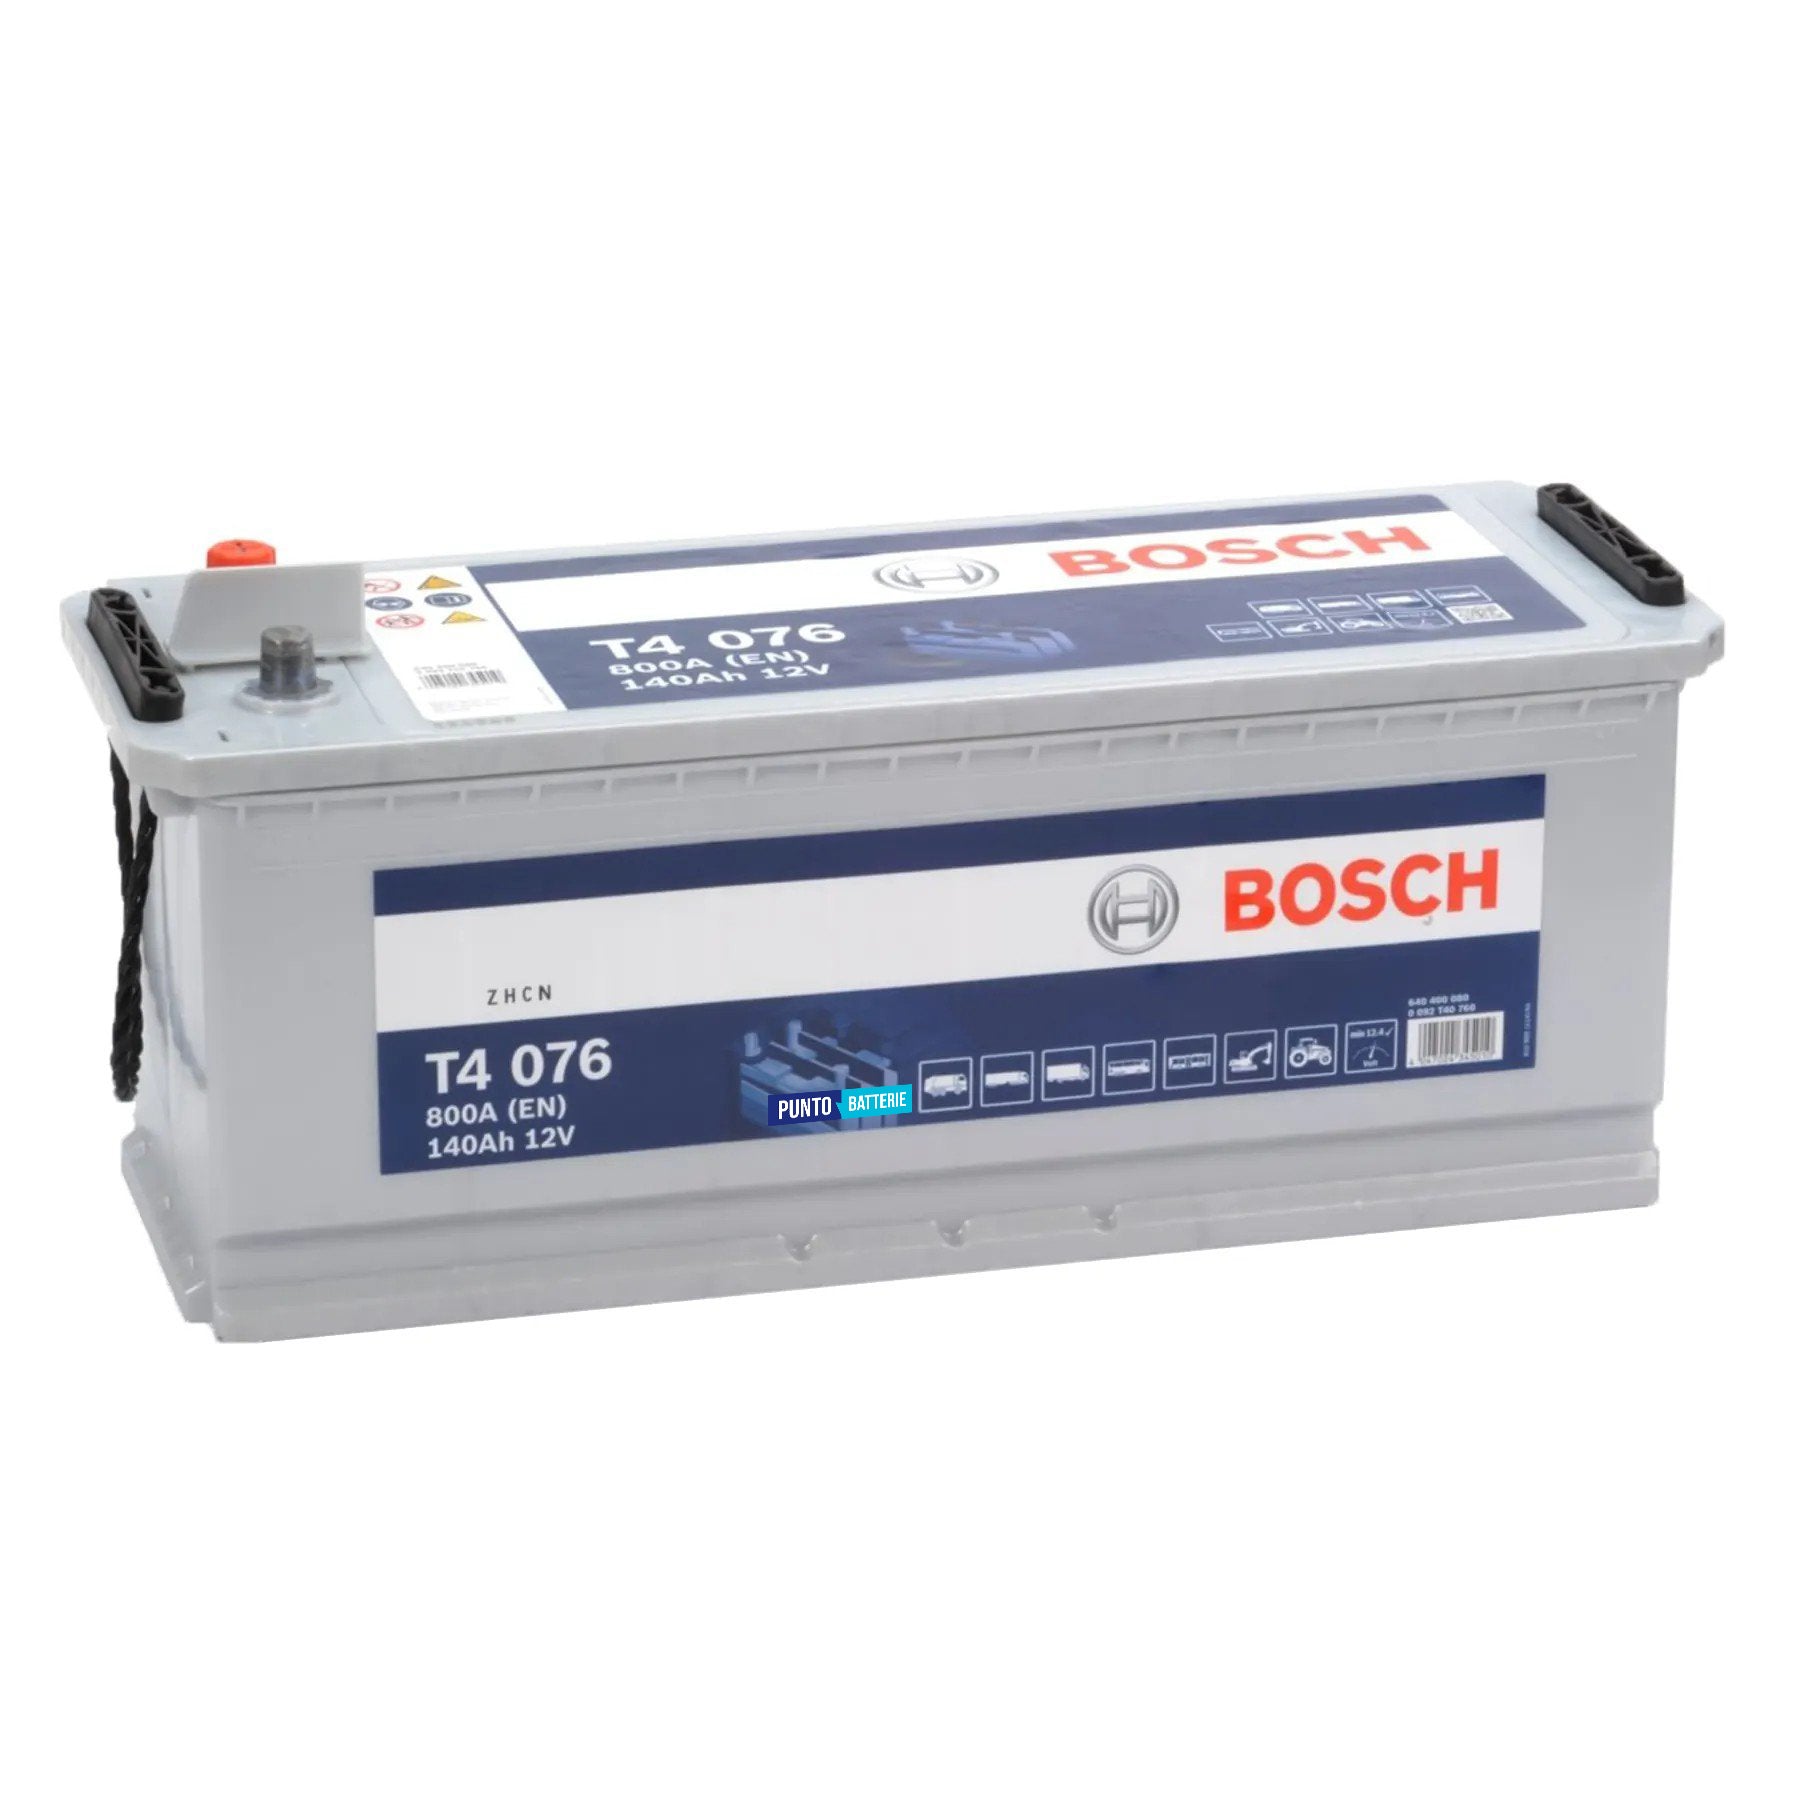 Batteria originale Bosch T4 T4076, dimensioni 513 x 189 x 223, polo positivo a sinistra, 12 volt, 140 amperora, 800 ampere. Batteria per camion e veicoli pesanti.